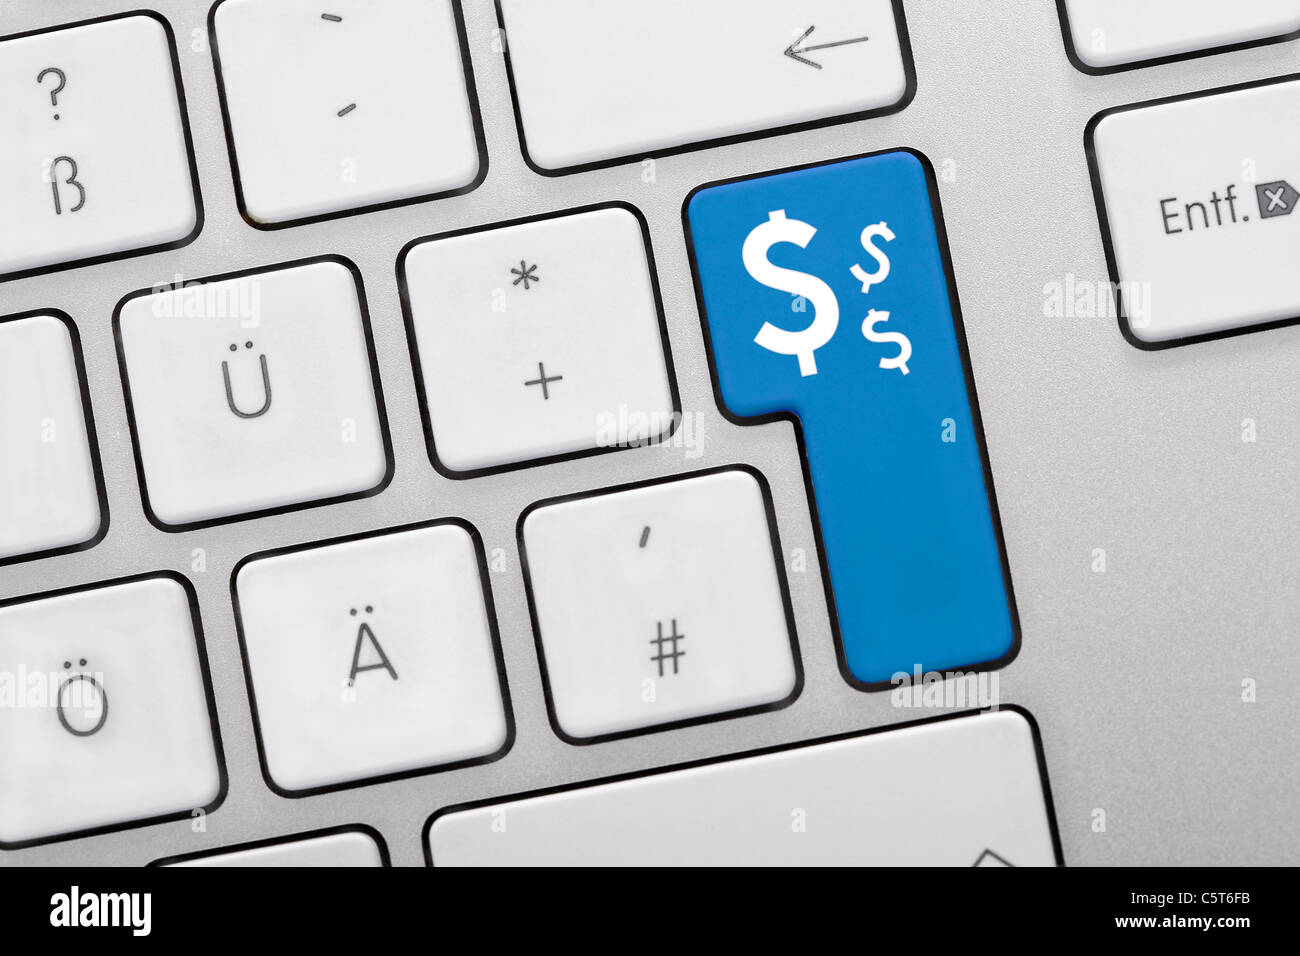 Illustrazione della tastiera avente tasto blu con il simbolo del dollaro, close up Foto Stock